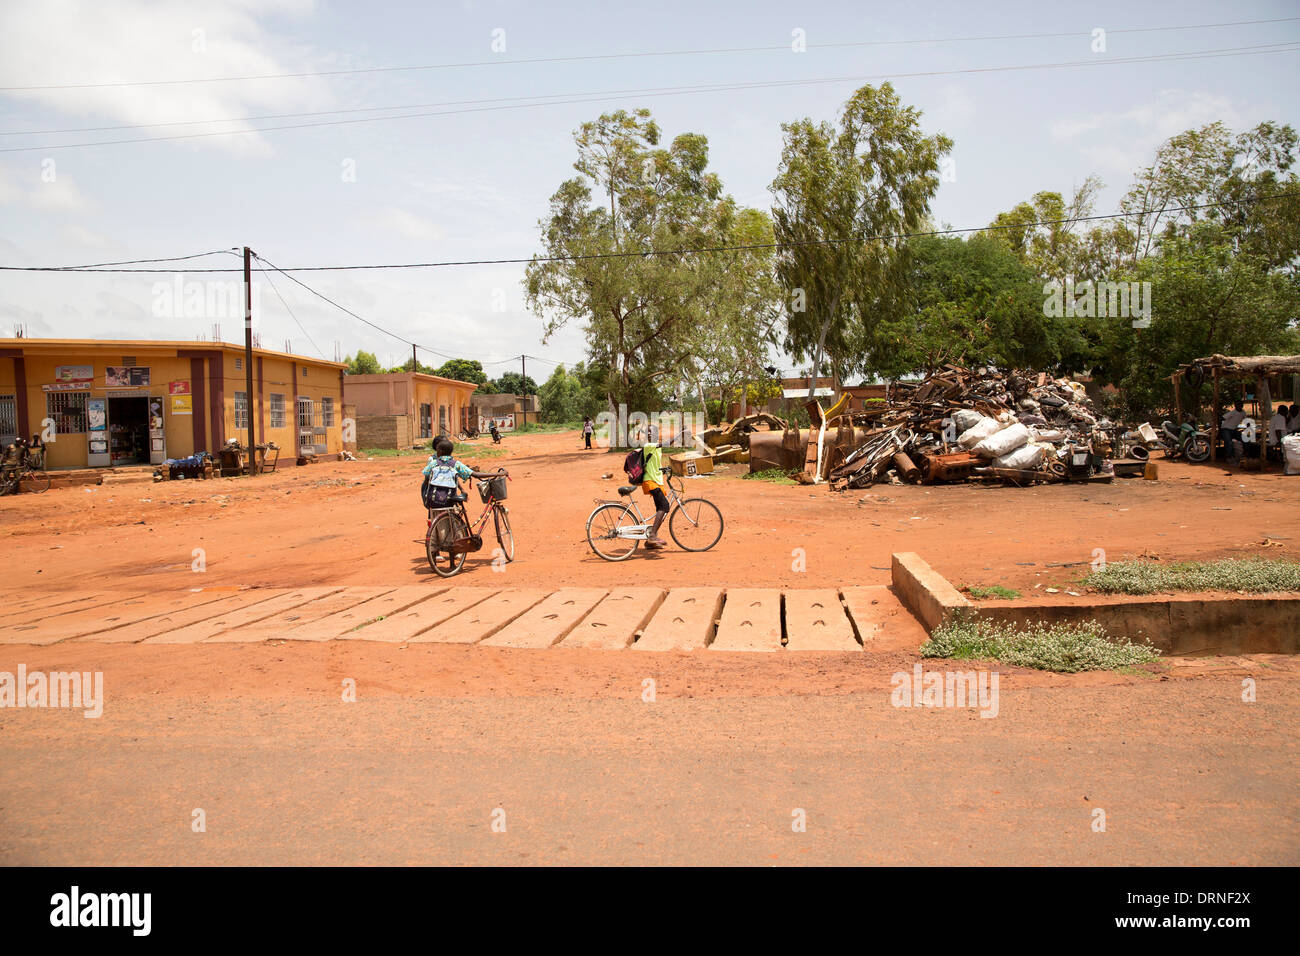 street scene in Burkina Faso, Africa Stock Photo